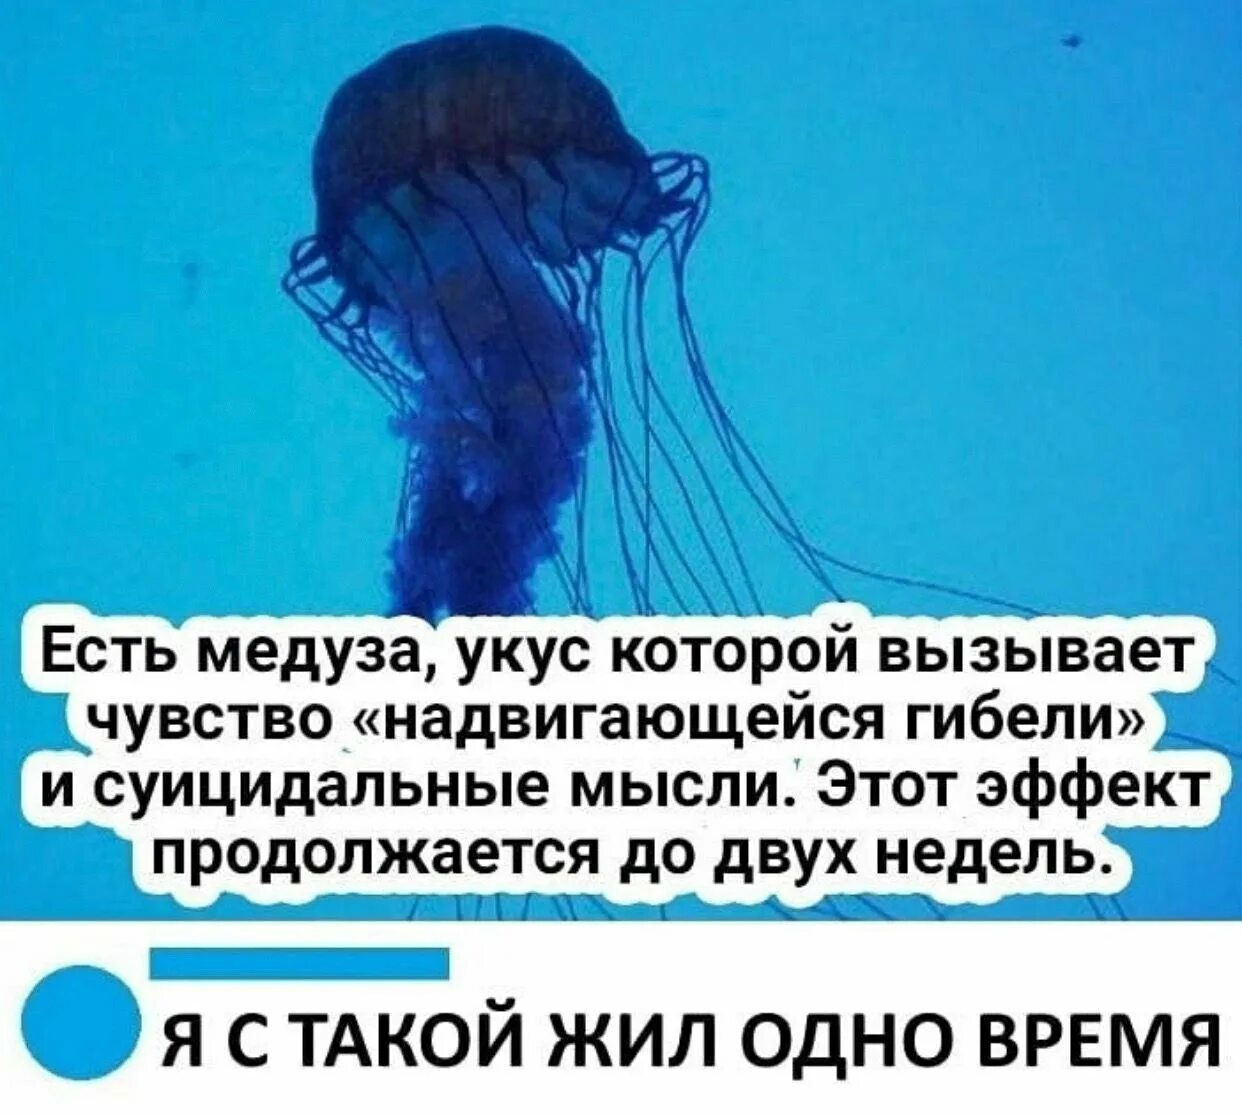 Медуза которая вызывает чувство надвигающейся гибели. Медуза суицидальные мысли. Медуза Мем. Укус медузы вызывает чувство надвигающейся гибели. У медузы есть мозги